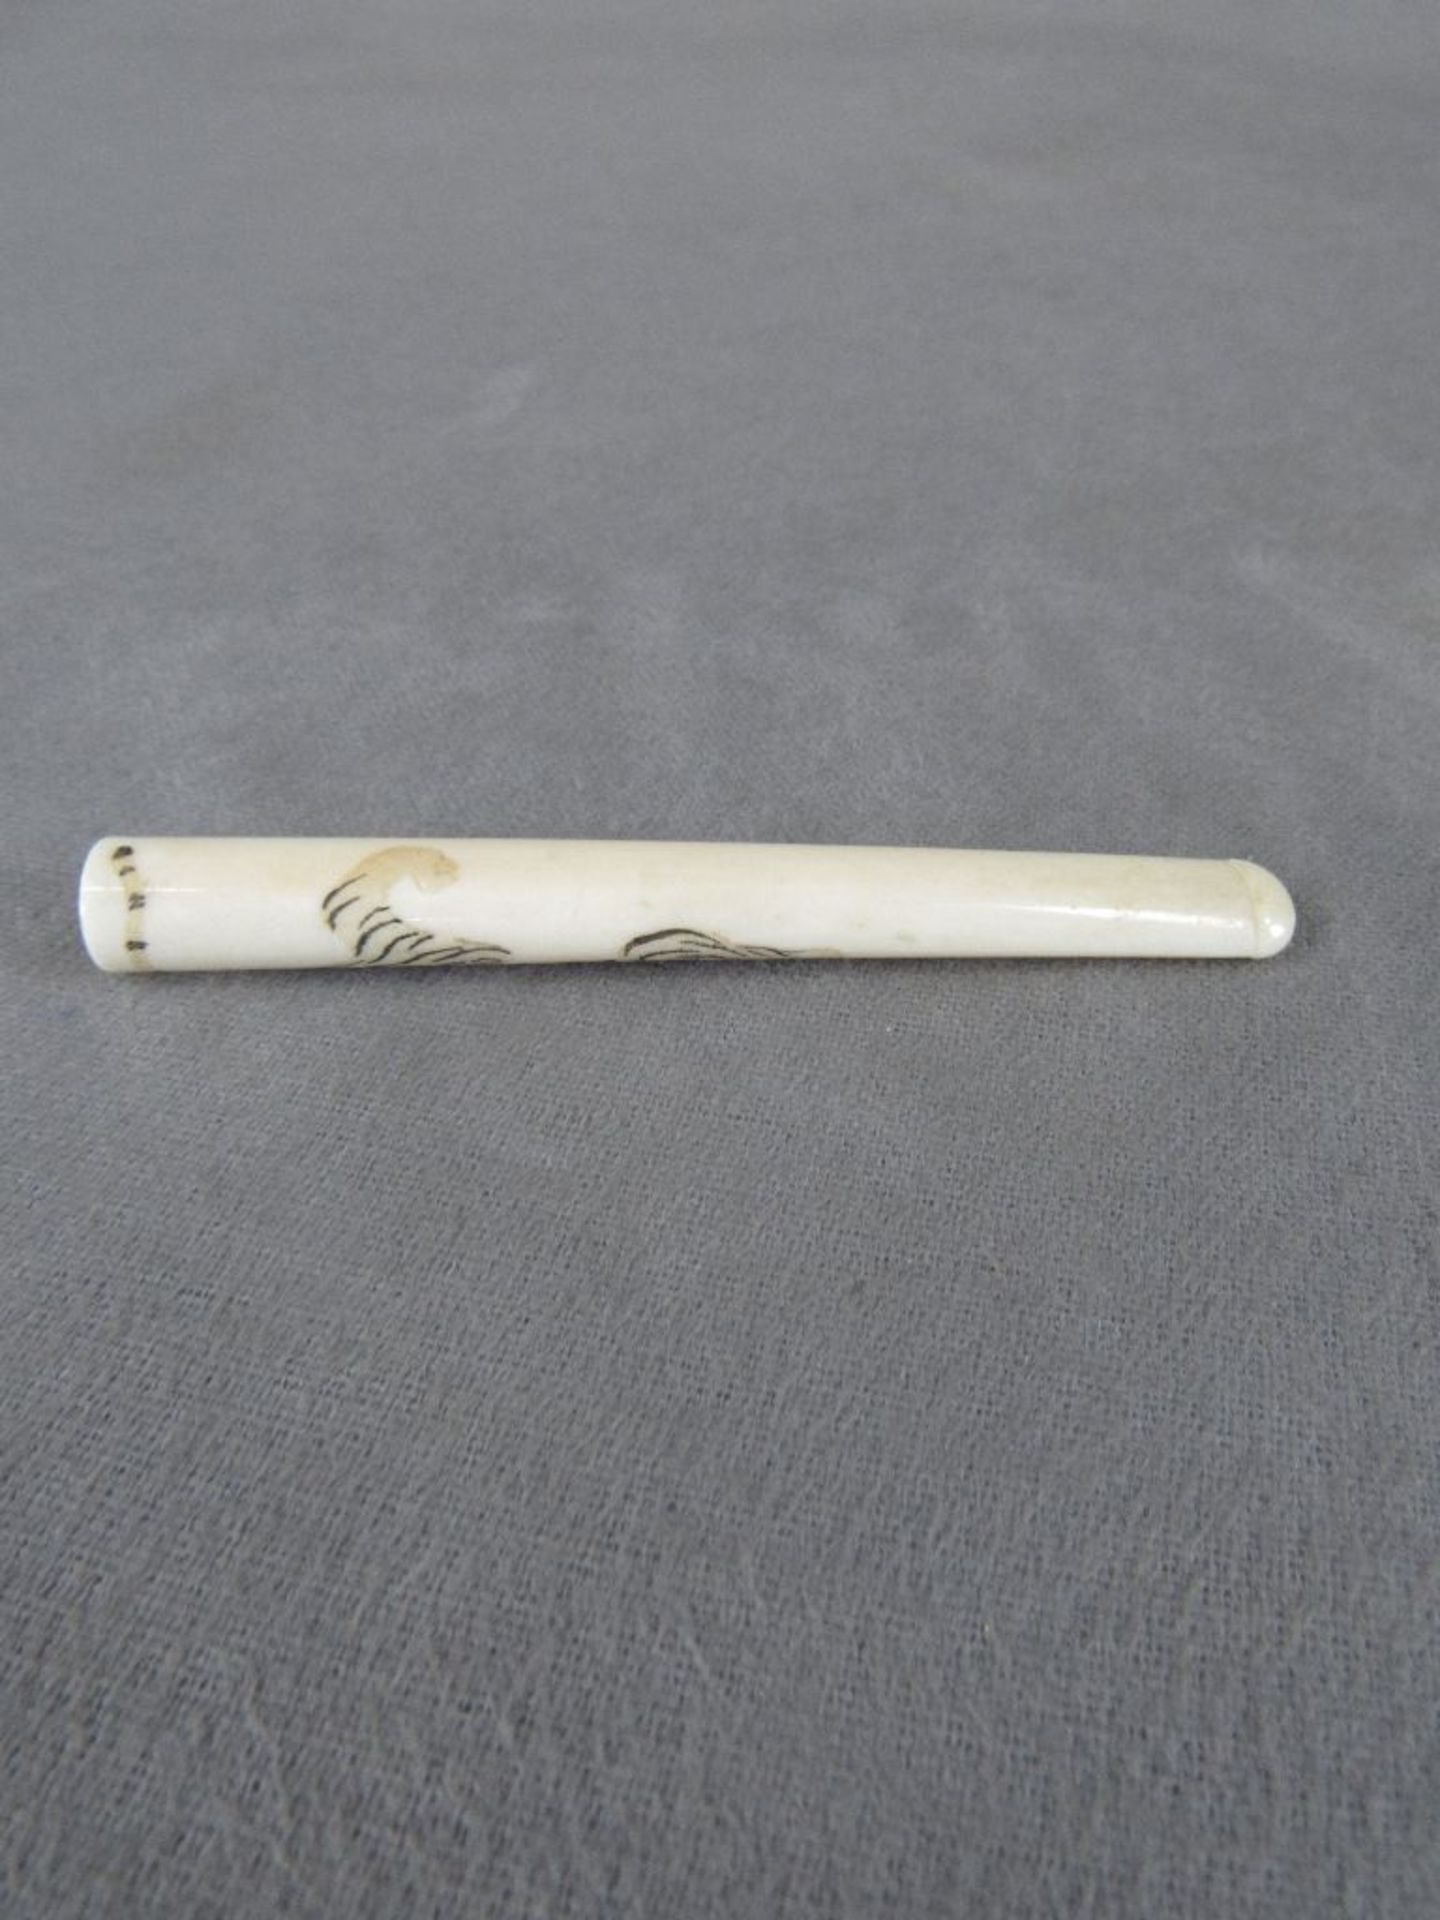 Zigarettenspitze Bein asiatisch 10cm lang - Image 3 of 3